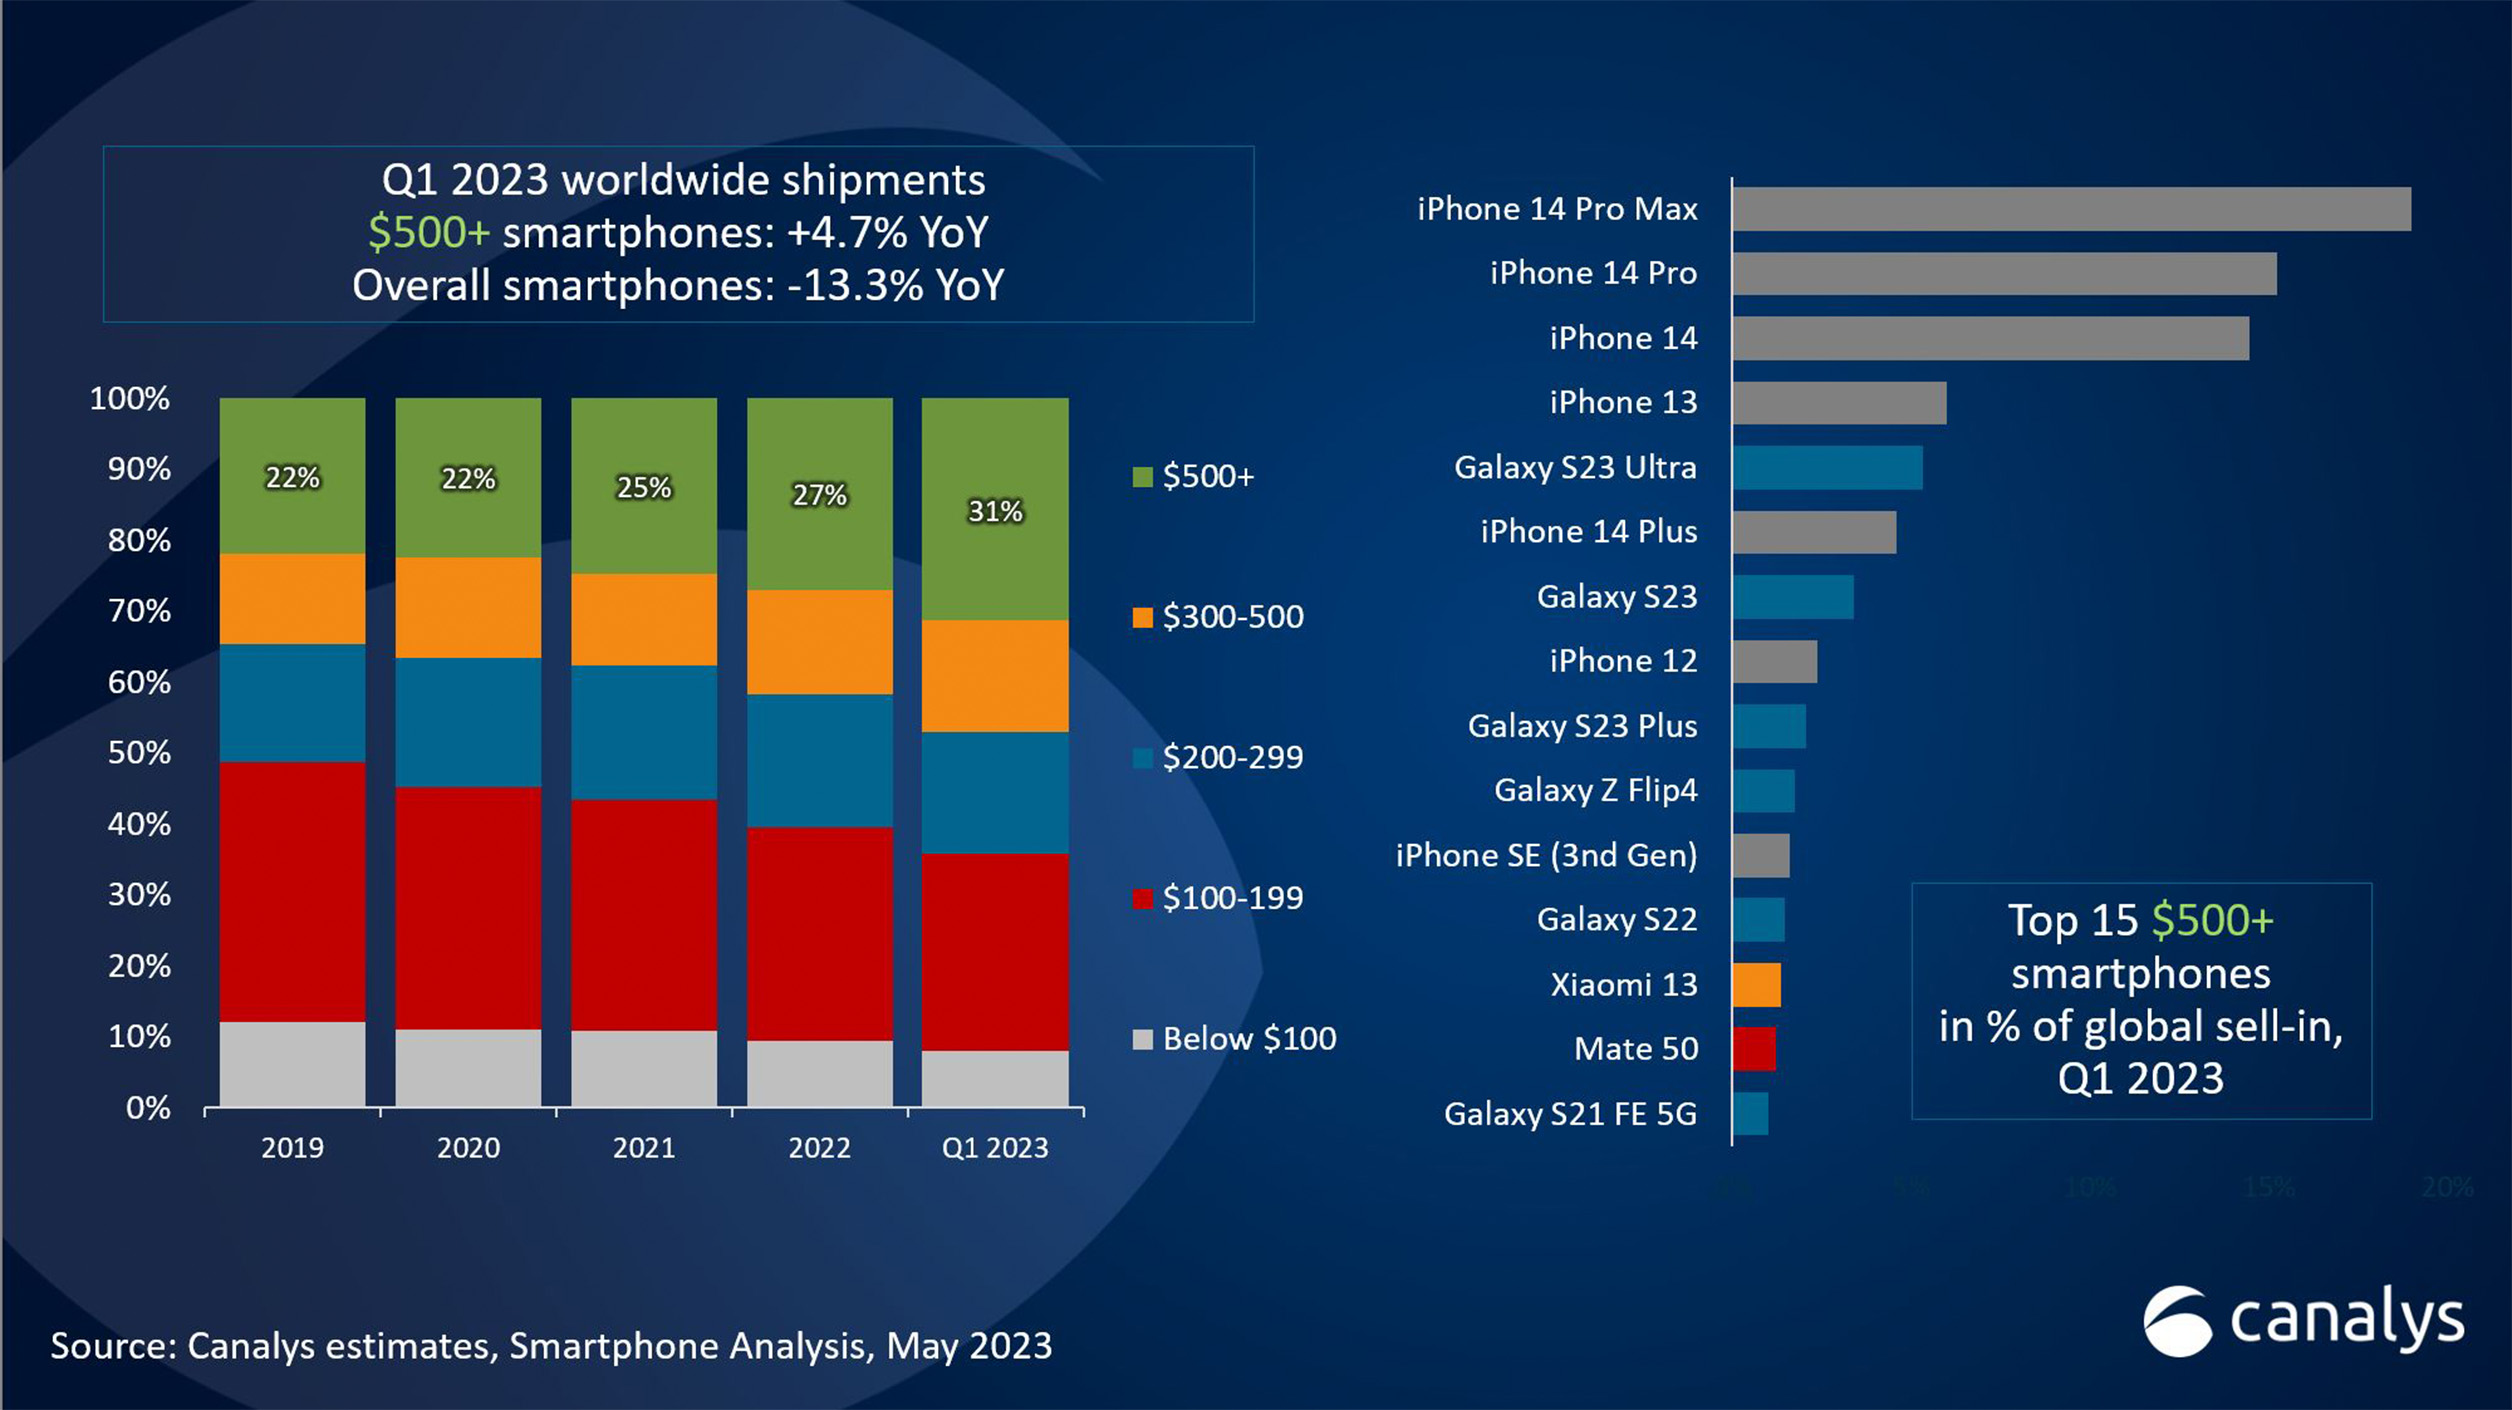 Los Smartphones de gama alta más vendidos según Canalys